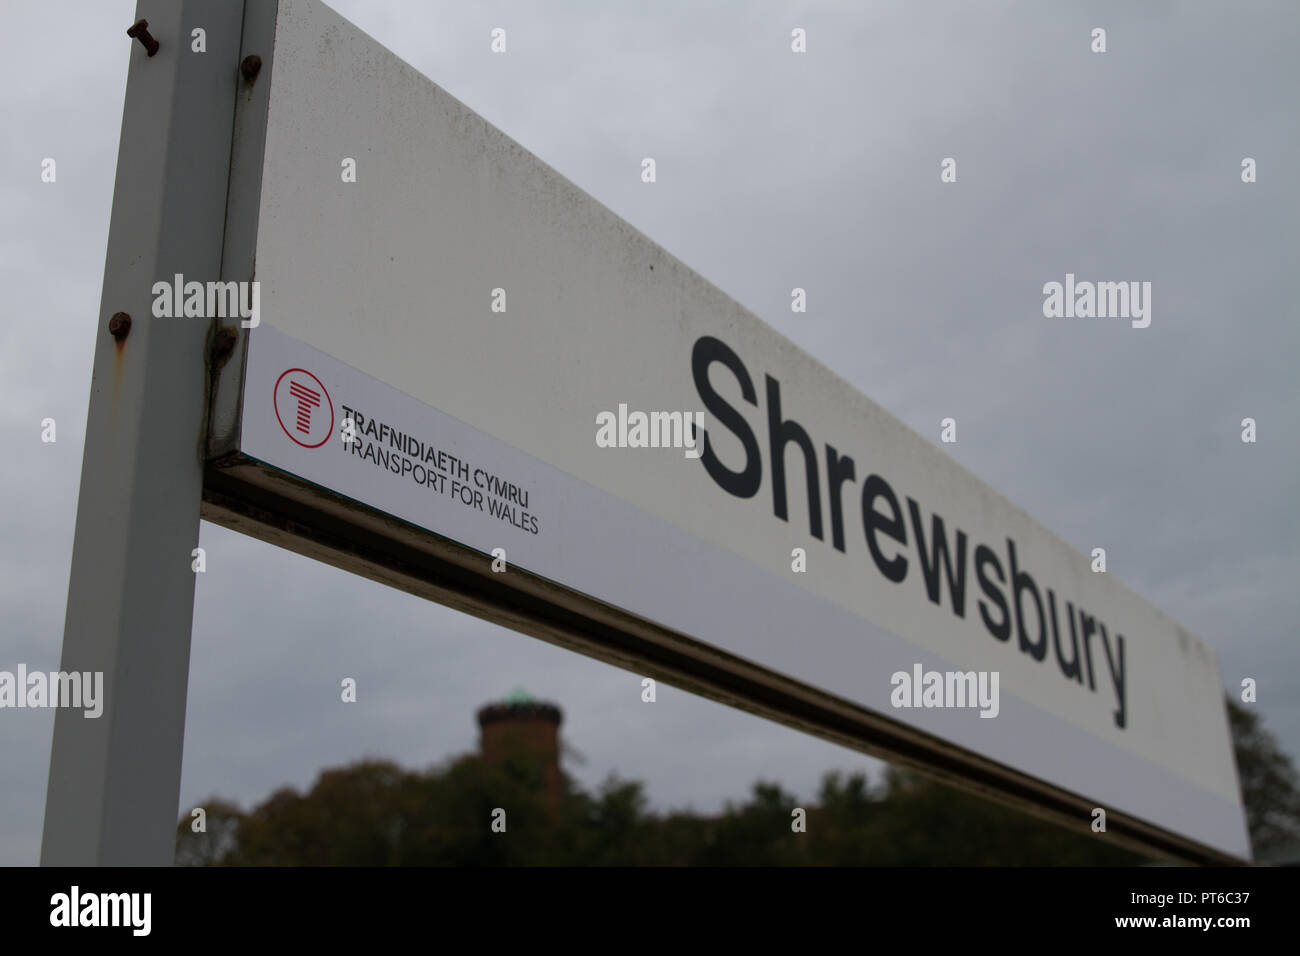 Estación de tren de Shrewsbury en Inglaterra signo contra el cielo gris, mostrando el transporte para Gales marca llevada por el nuevo operador de tren Keolis Amey. Foto de stock